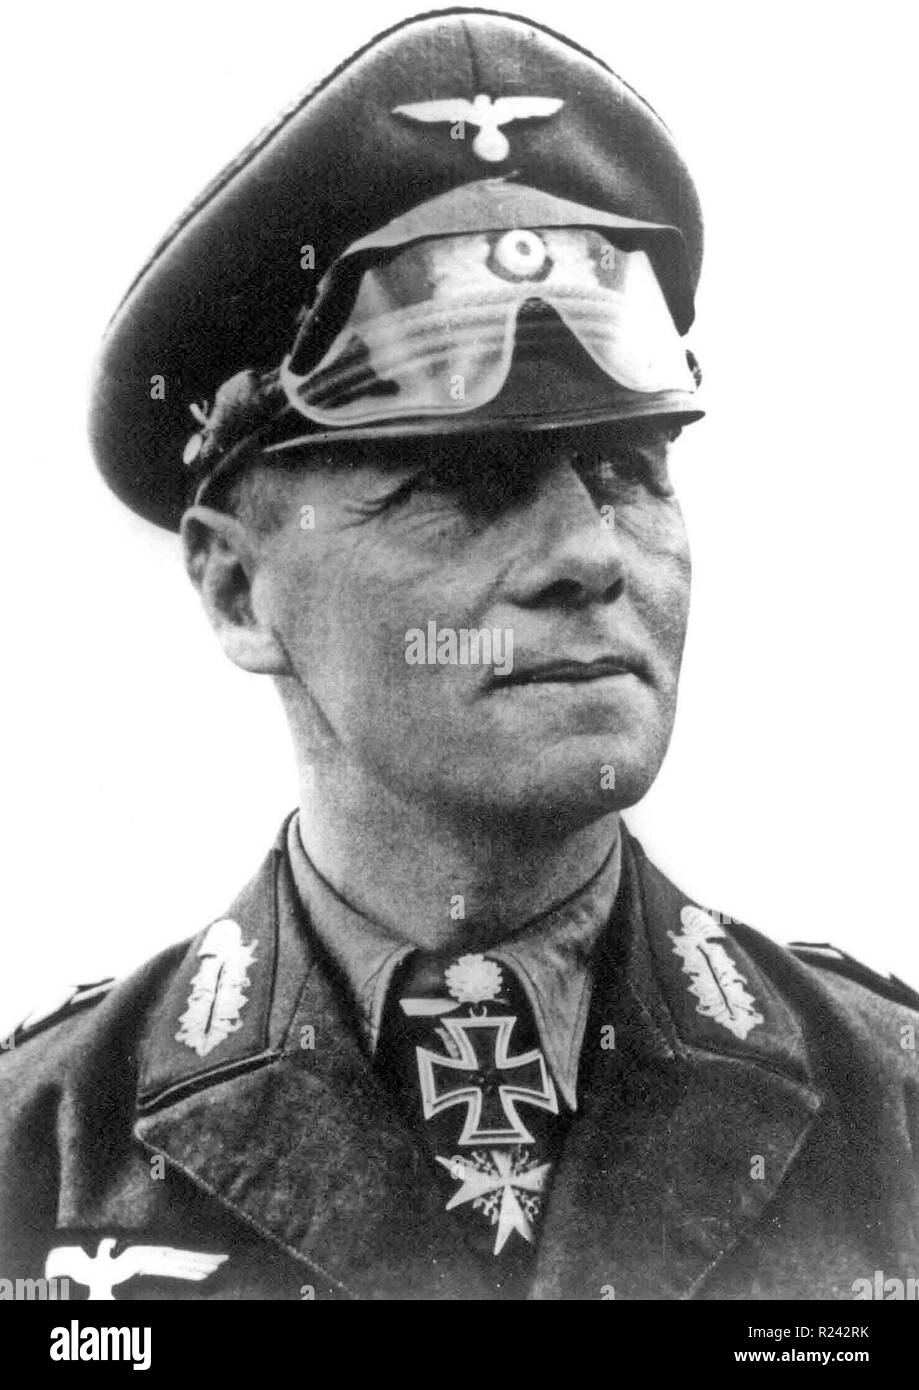 Erwin Johannes Eugene Rommel (15 de noviembre de 1891 - 14 de octubre de 1944), popularmente conocido como el zorro del desierto Foto de stock